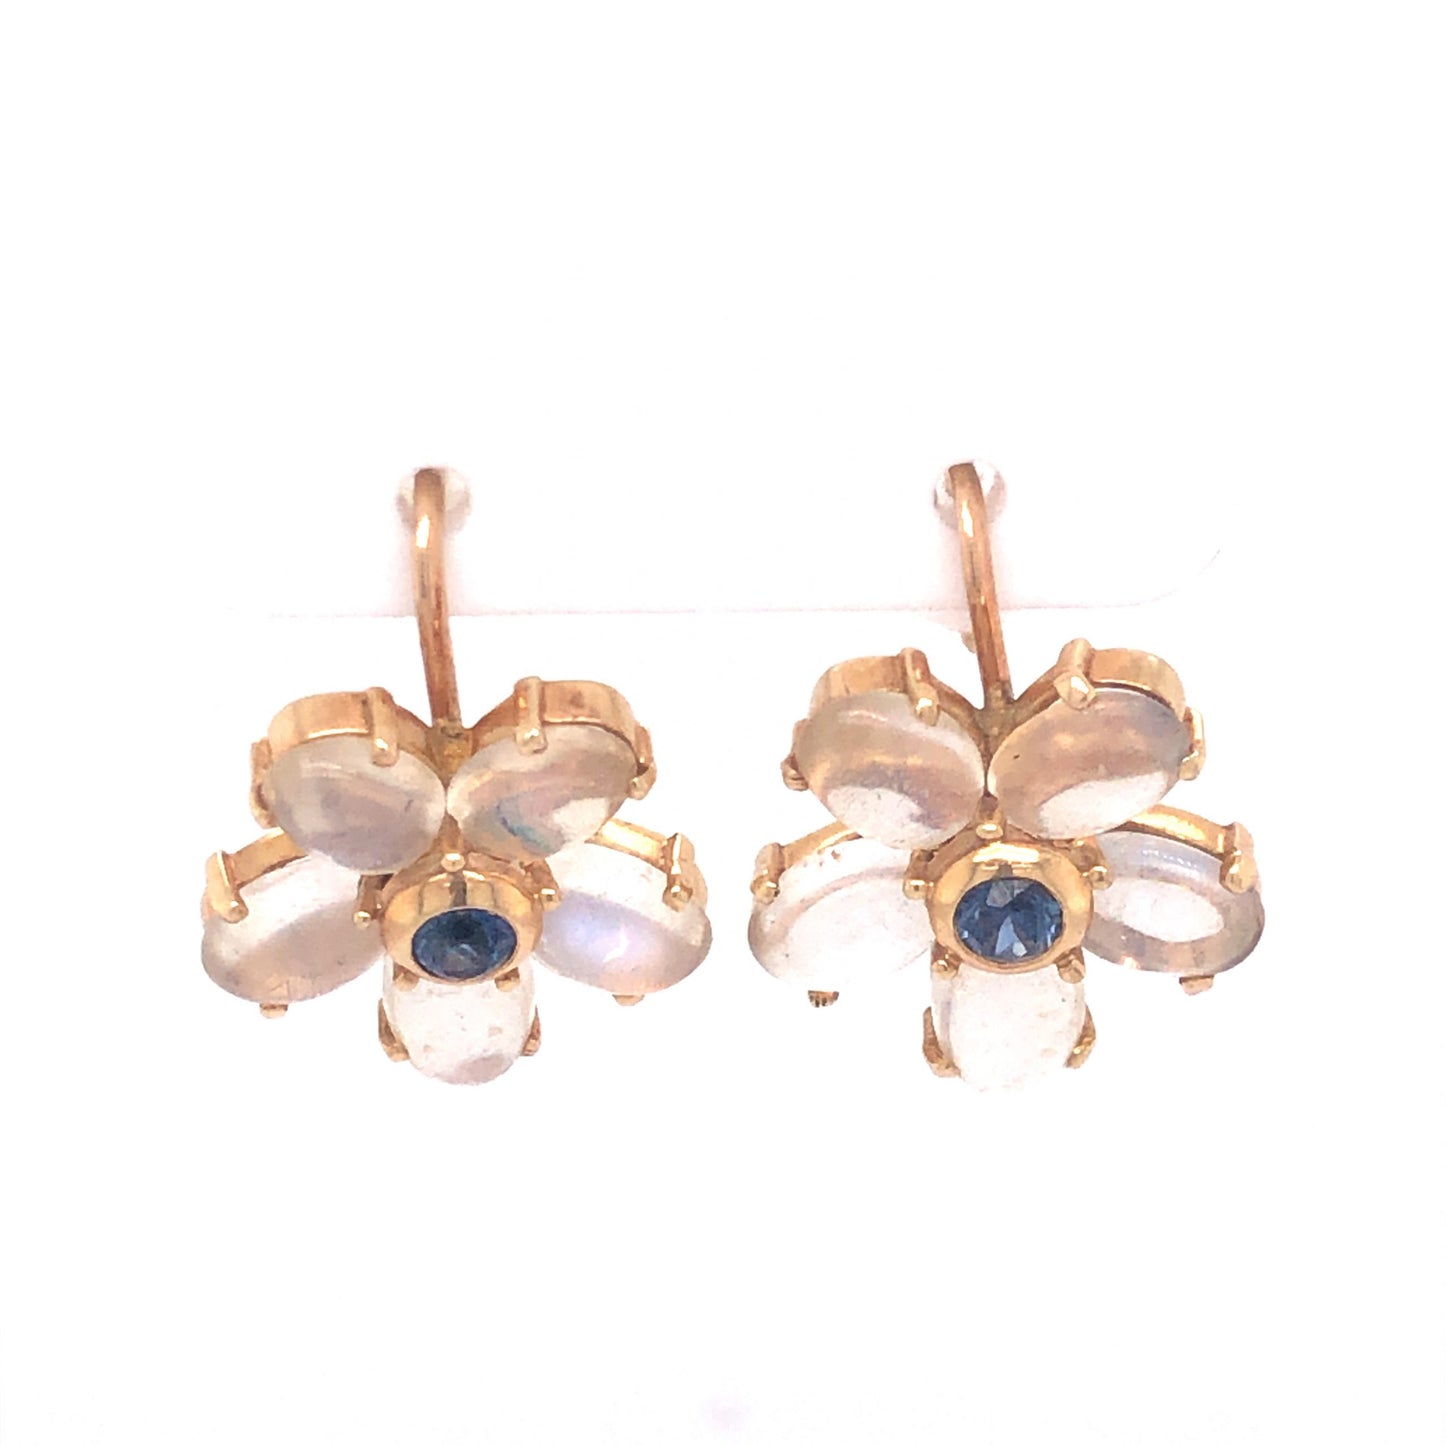 Moonstone & Sapphire Earrings in 14k Yellow Gold